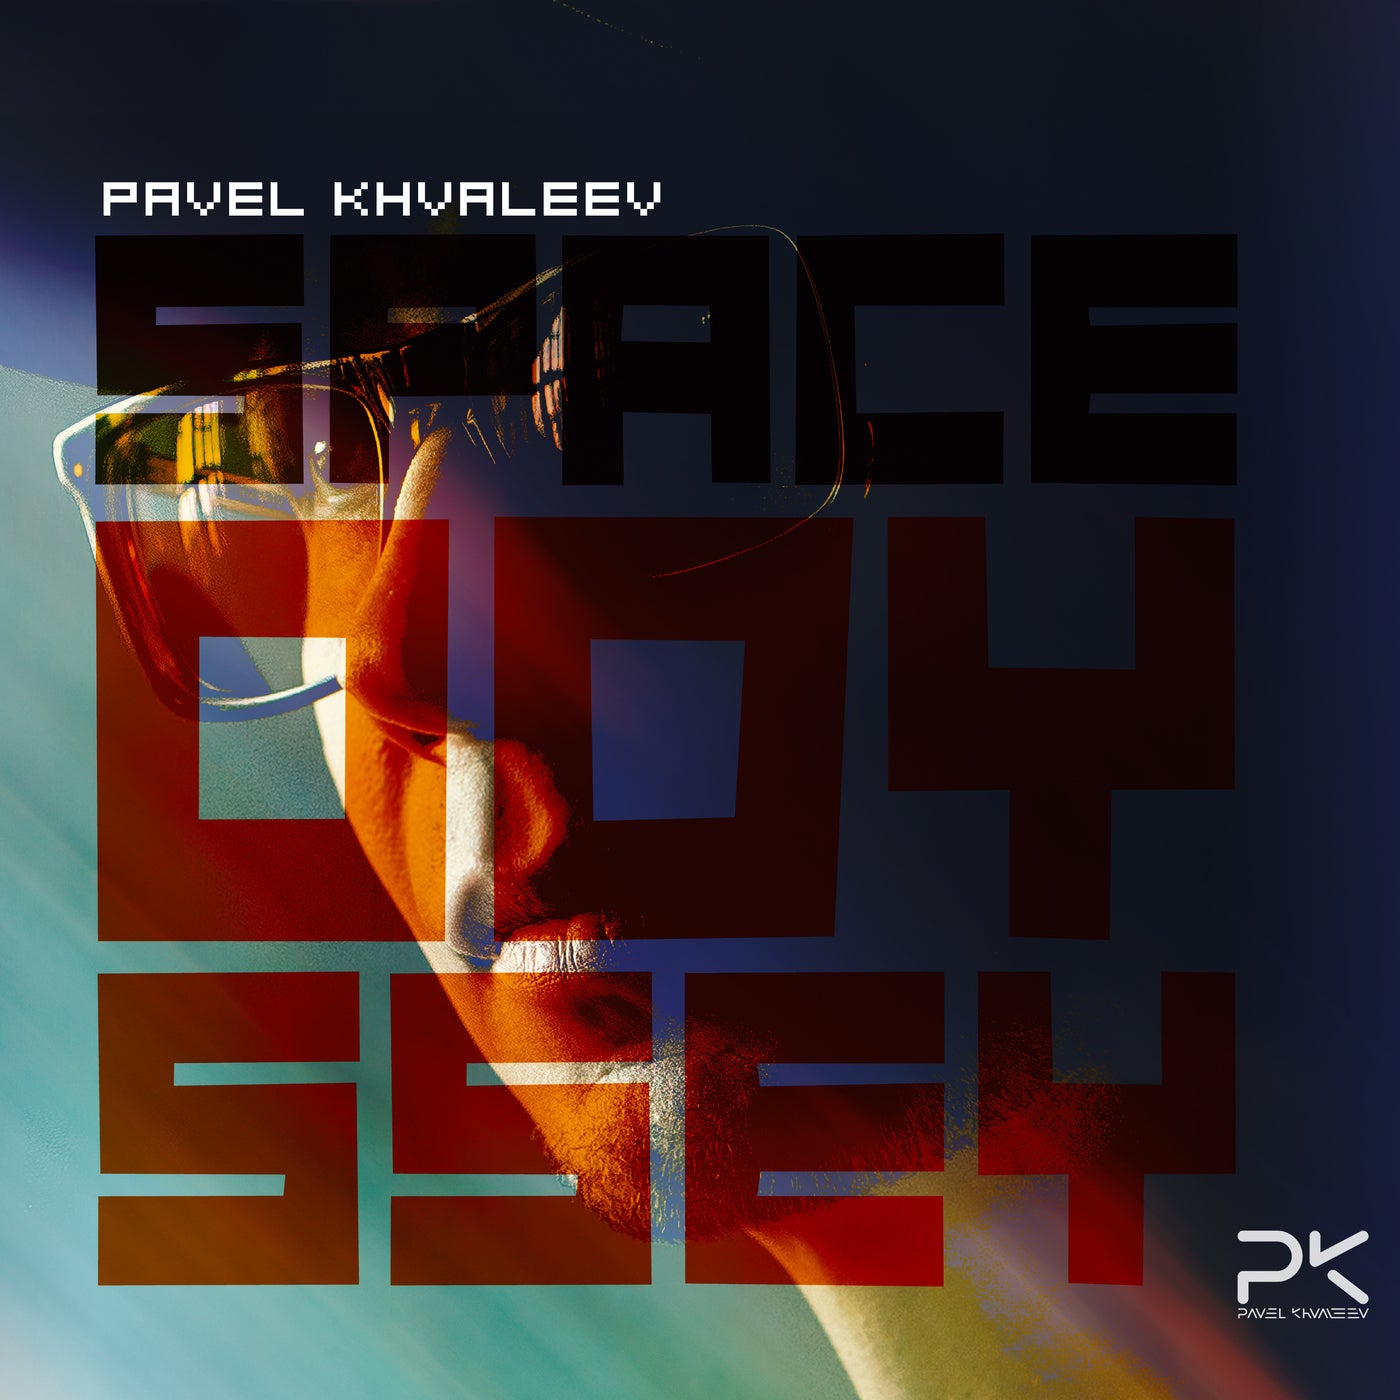 Pavel Khvaleev - Space Odyssey (extended Mix) on Revolution Radio